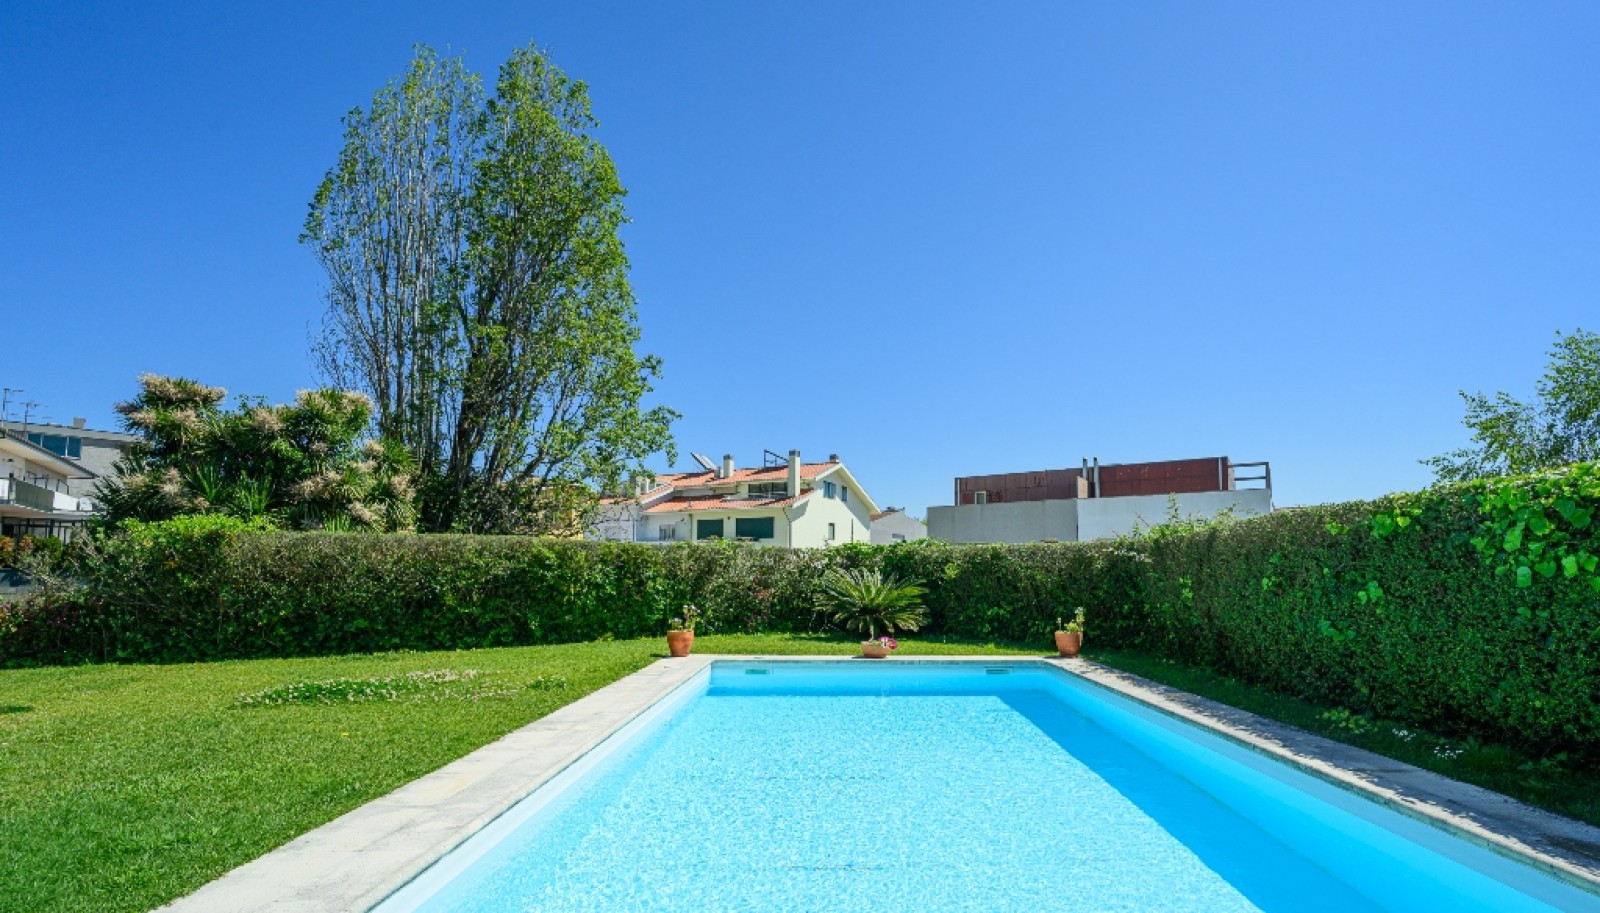 Moradia V5 com piscina, à venda, ao Parque da Cidade do Porto, Portugal_261772